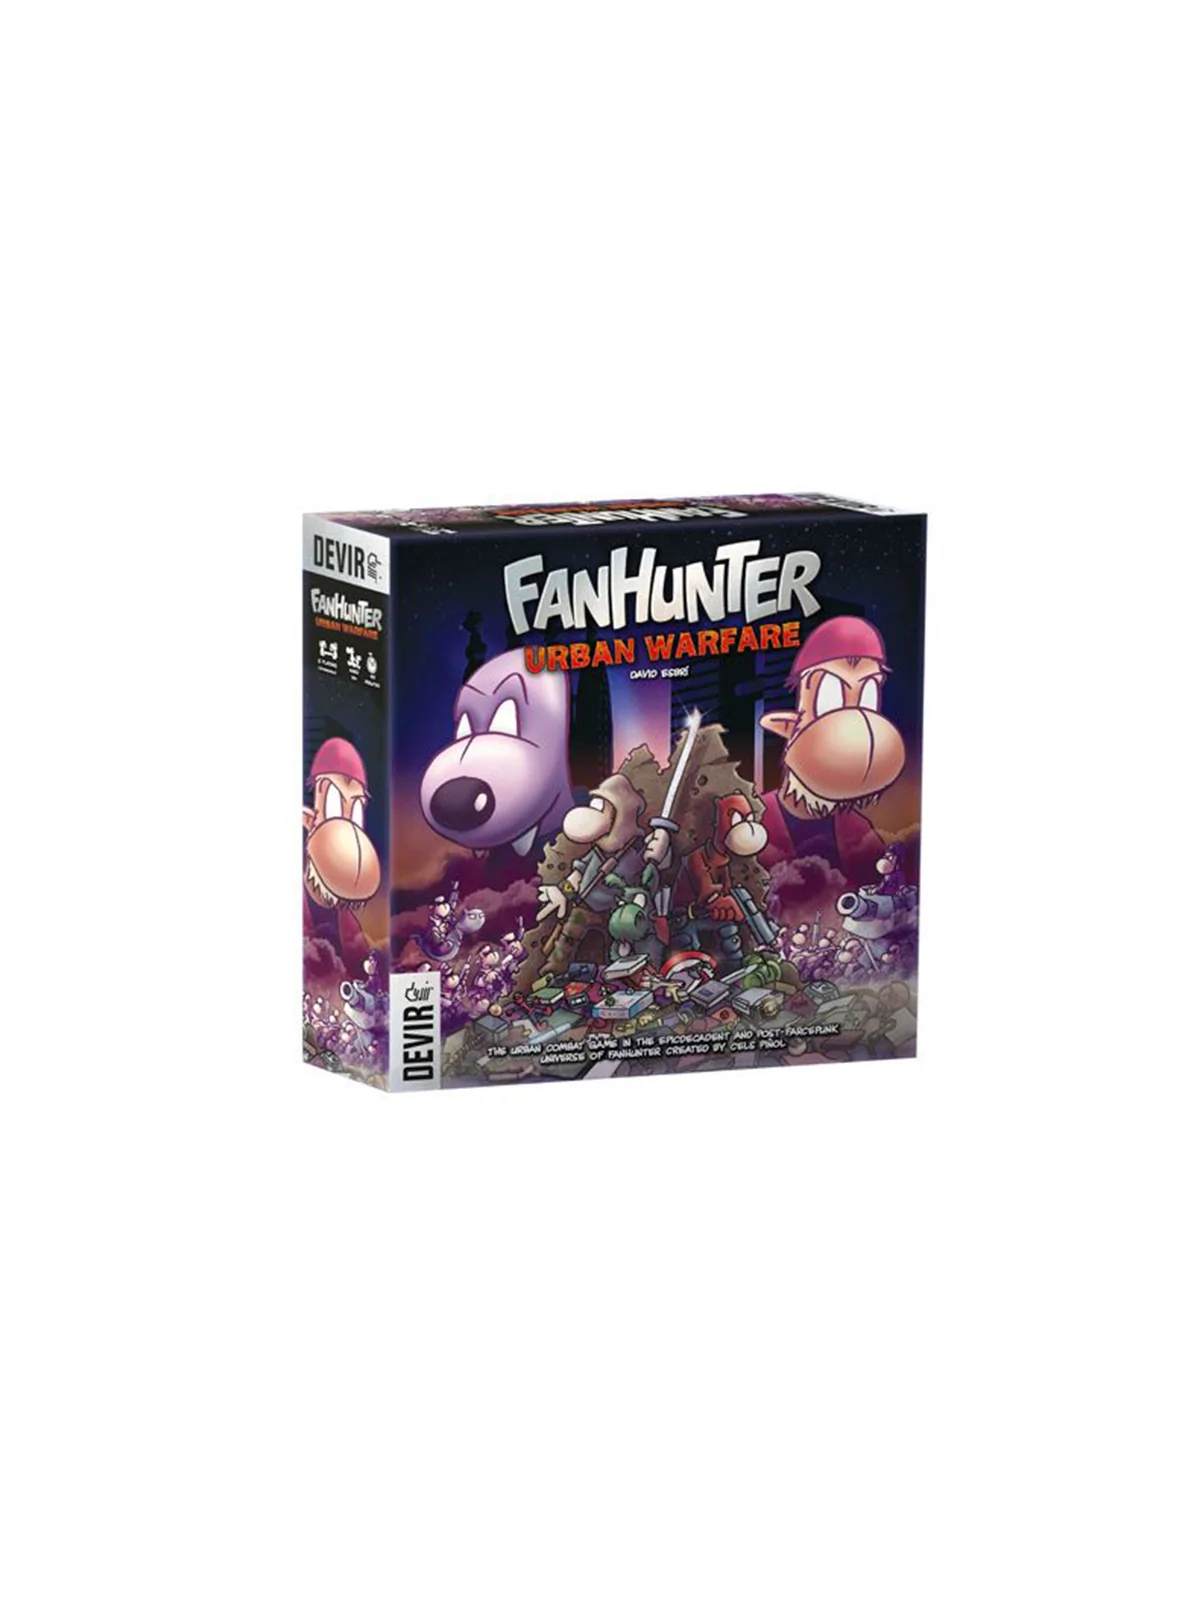 Comprar Fanhunter - Urban Warfare barato al mejor precio 63,00 € de De